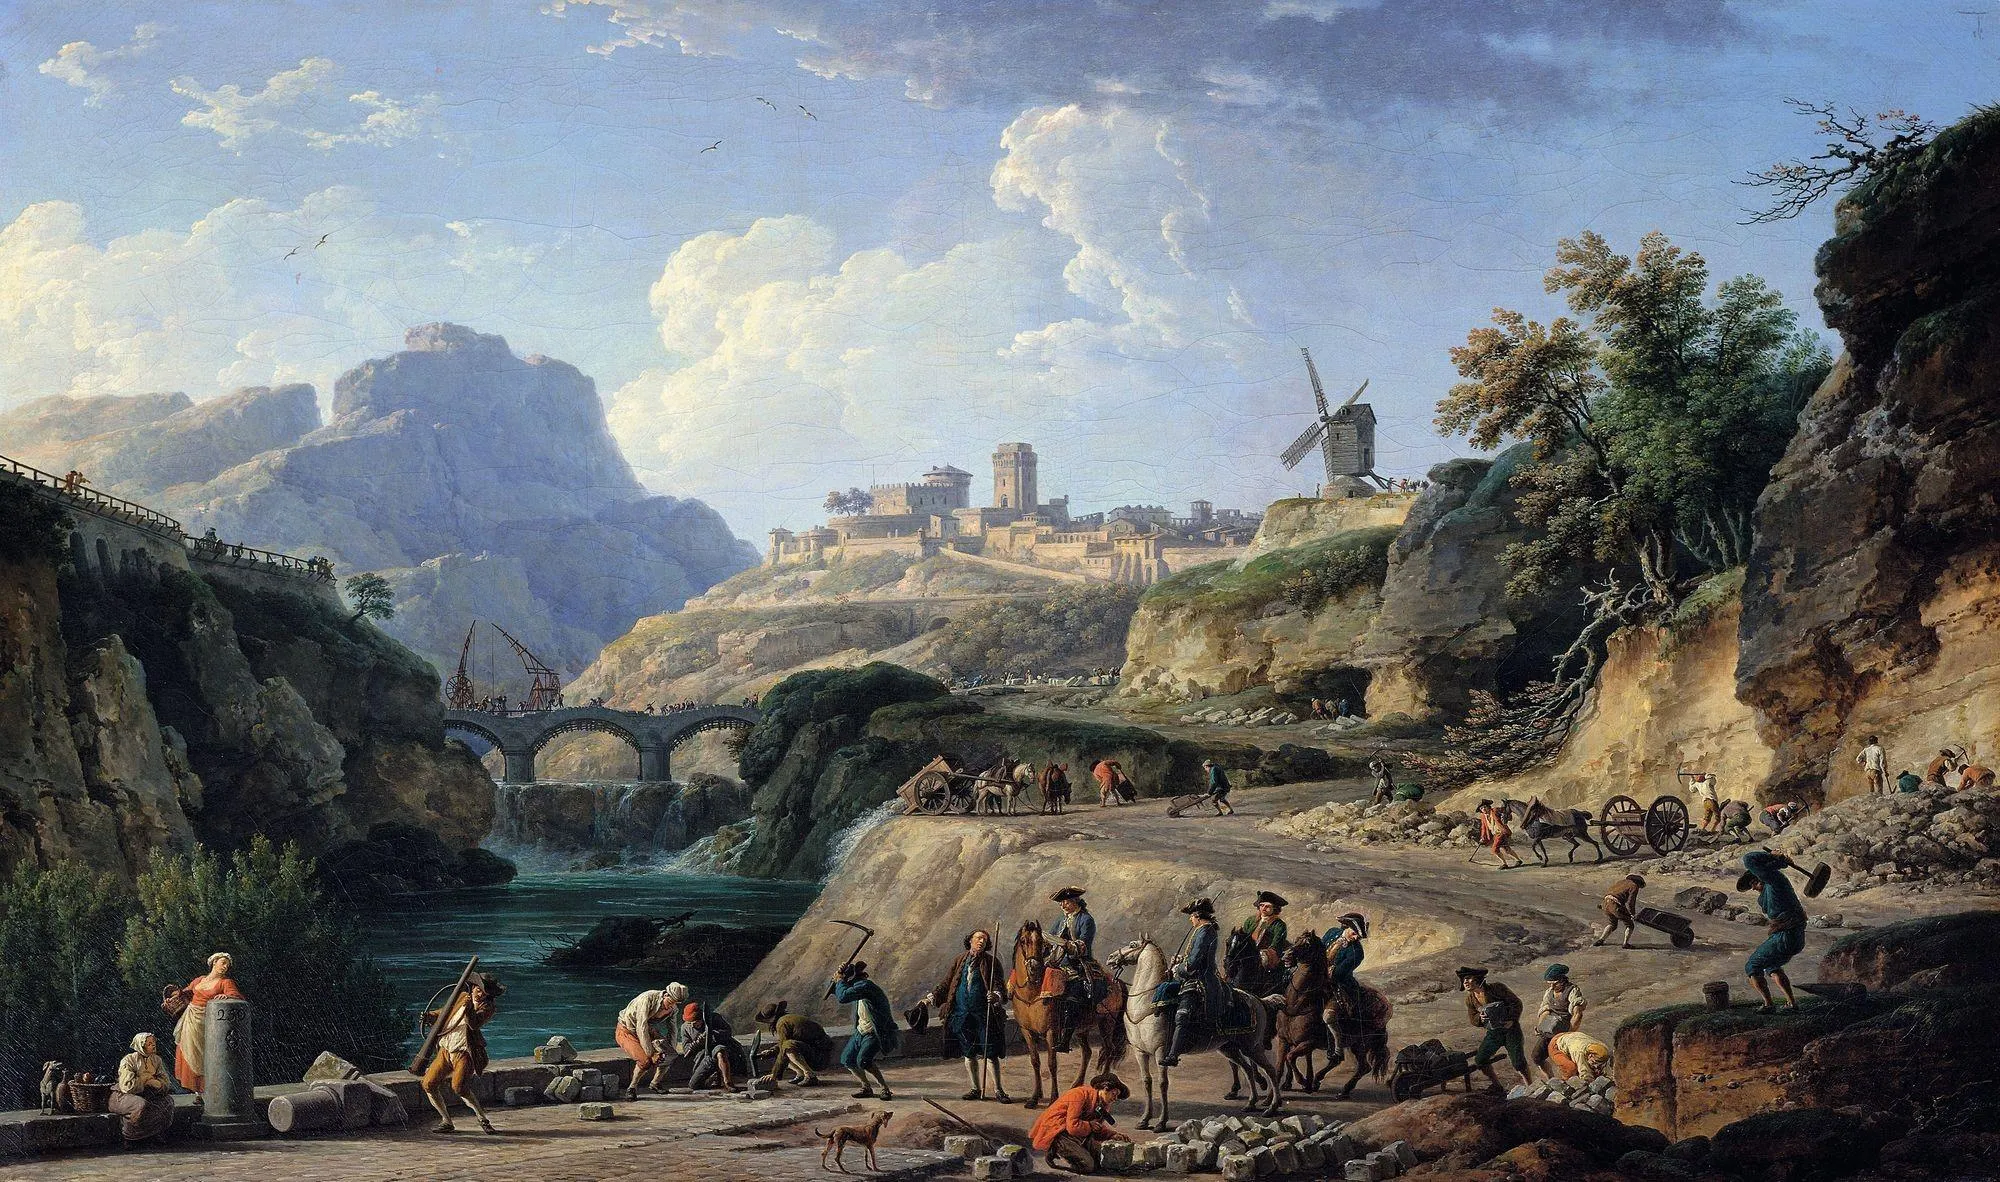 Joseph Vernet, La Construction d'un grand chemin, 1775, huile sur toile, 97 x 162 cm, musée du Louvre, Paris